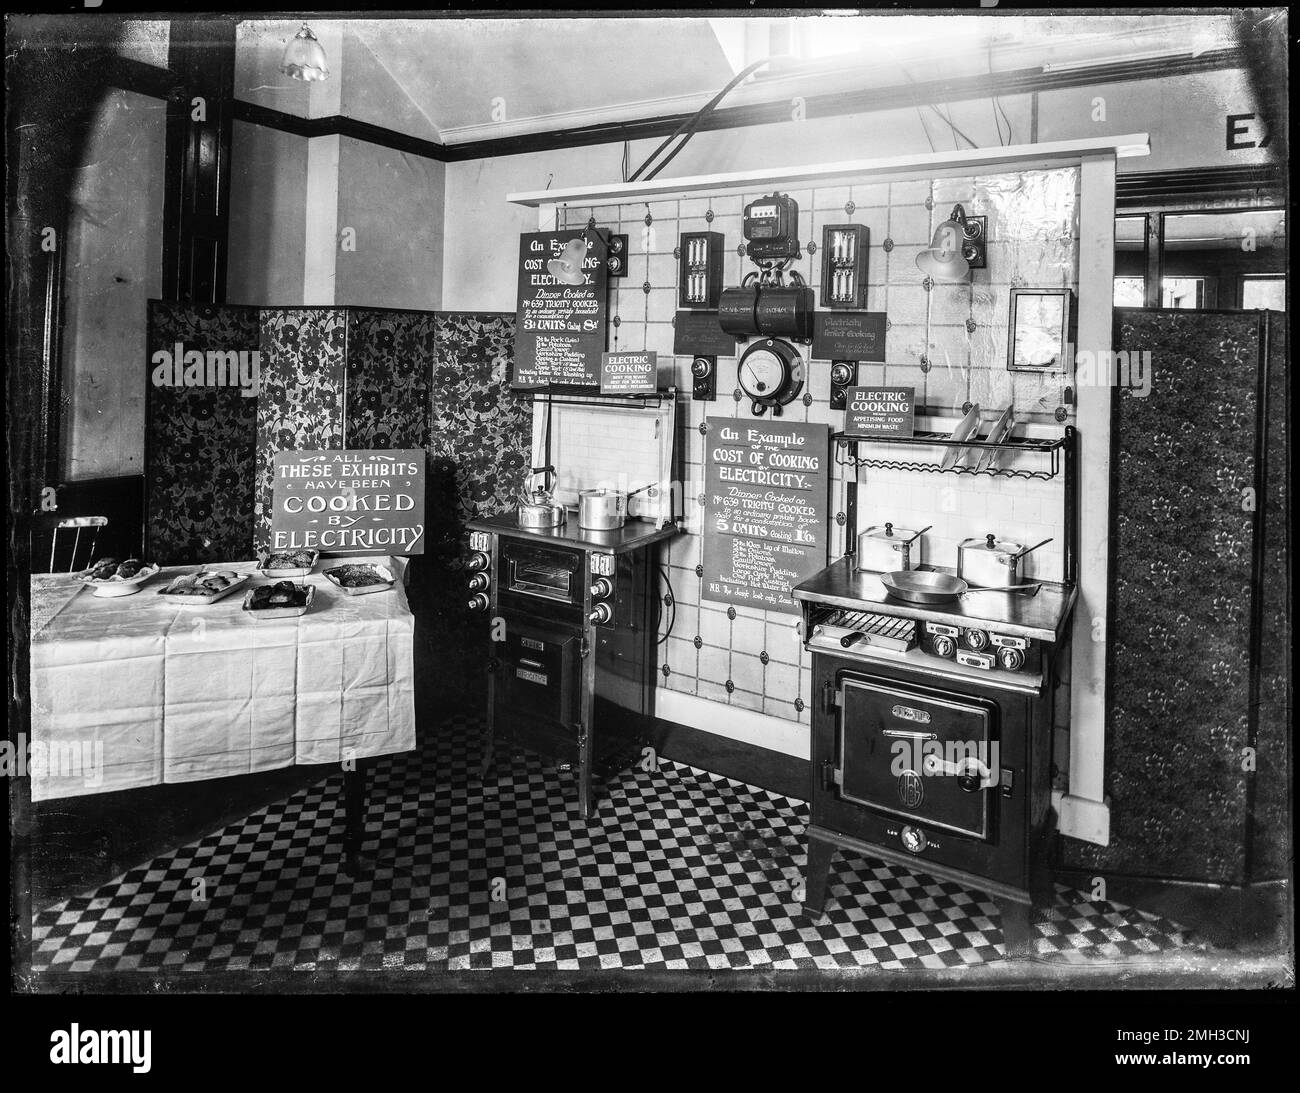 Storico cucinato da Elettricità mostra dei benefici di cucinare da elettricità. Si crede di essere stato al British Empire Exhibition 1924. Archivio fotografico in bianco e nero da vetro originale pieno negativo. Foto Stock